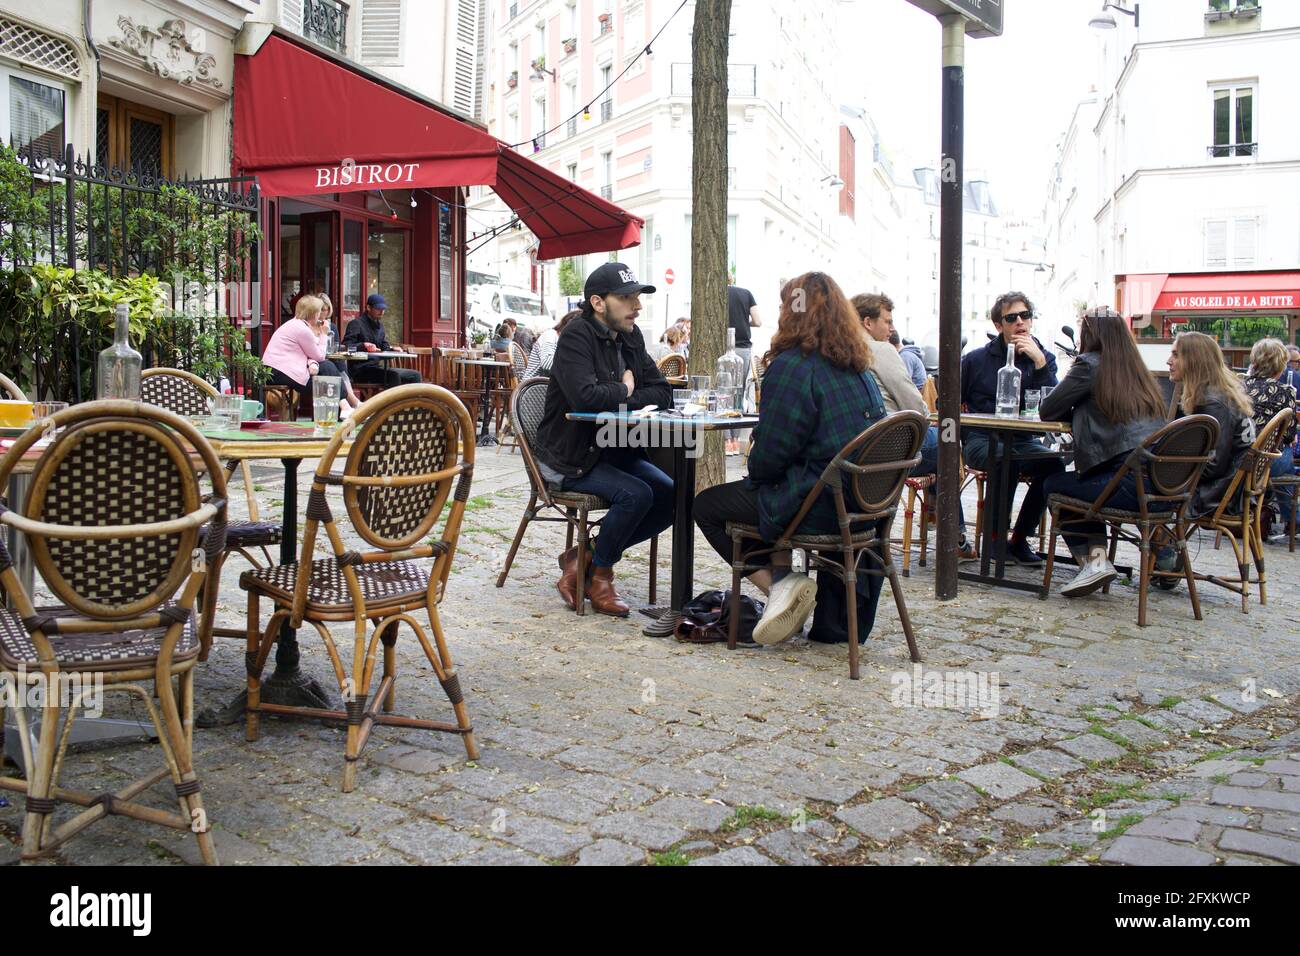 Los parisinos disfrutan de una bebida en una terraza de Bistrot, una de las muchas terrazas que ahora se abren al público después de que se alivien las restricciones de cierre de Covid-19 - Place Paul Albert, 75018, París, Francia. Mayo de 2021. Foto de stock